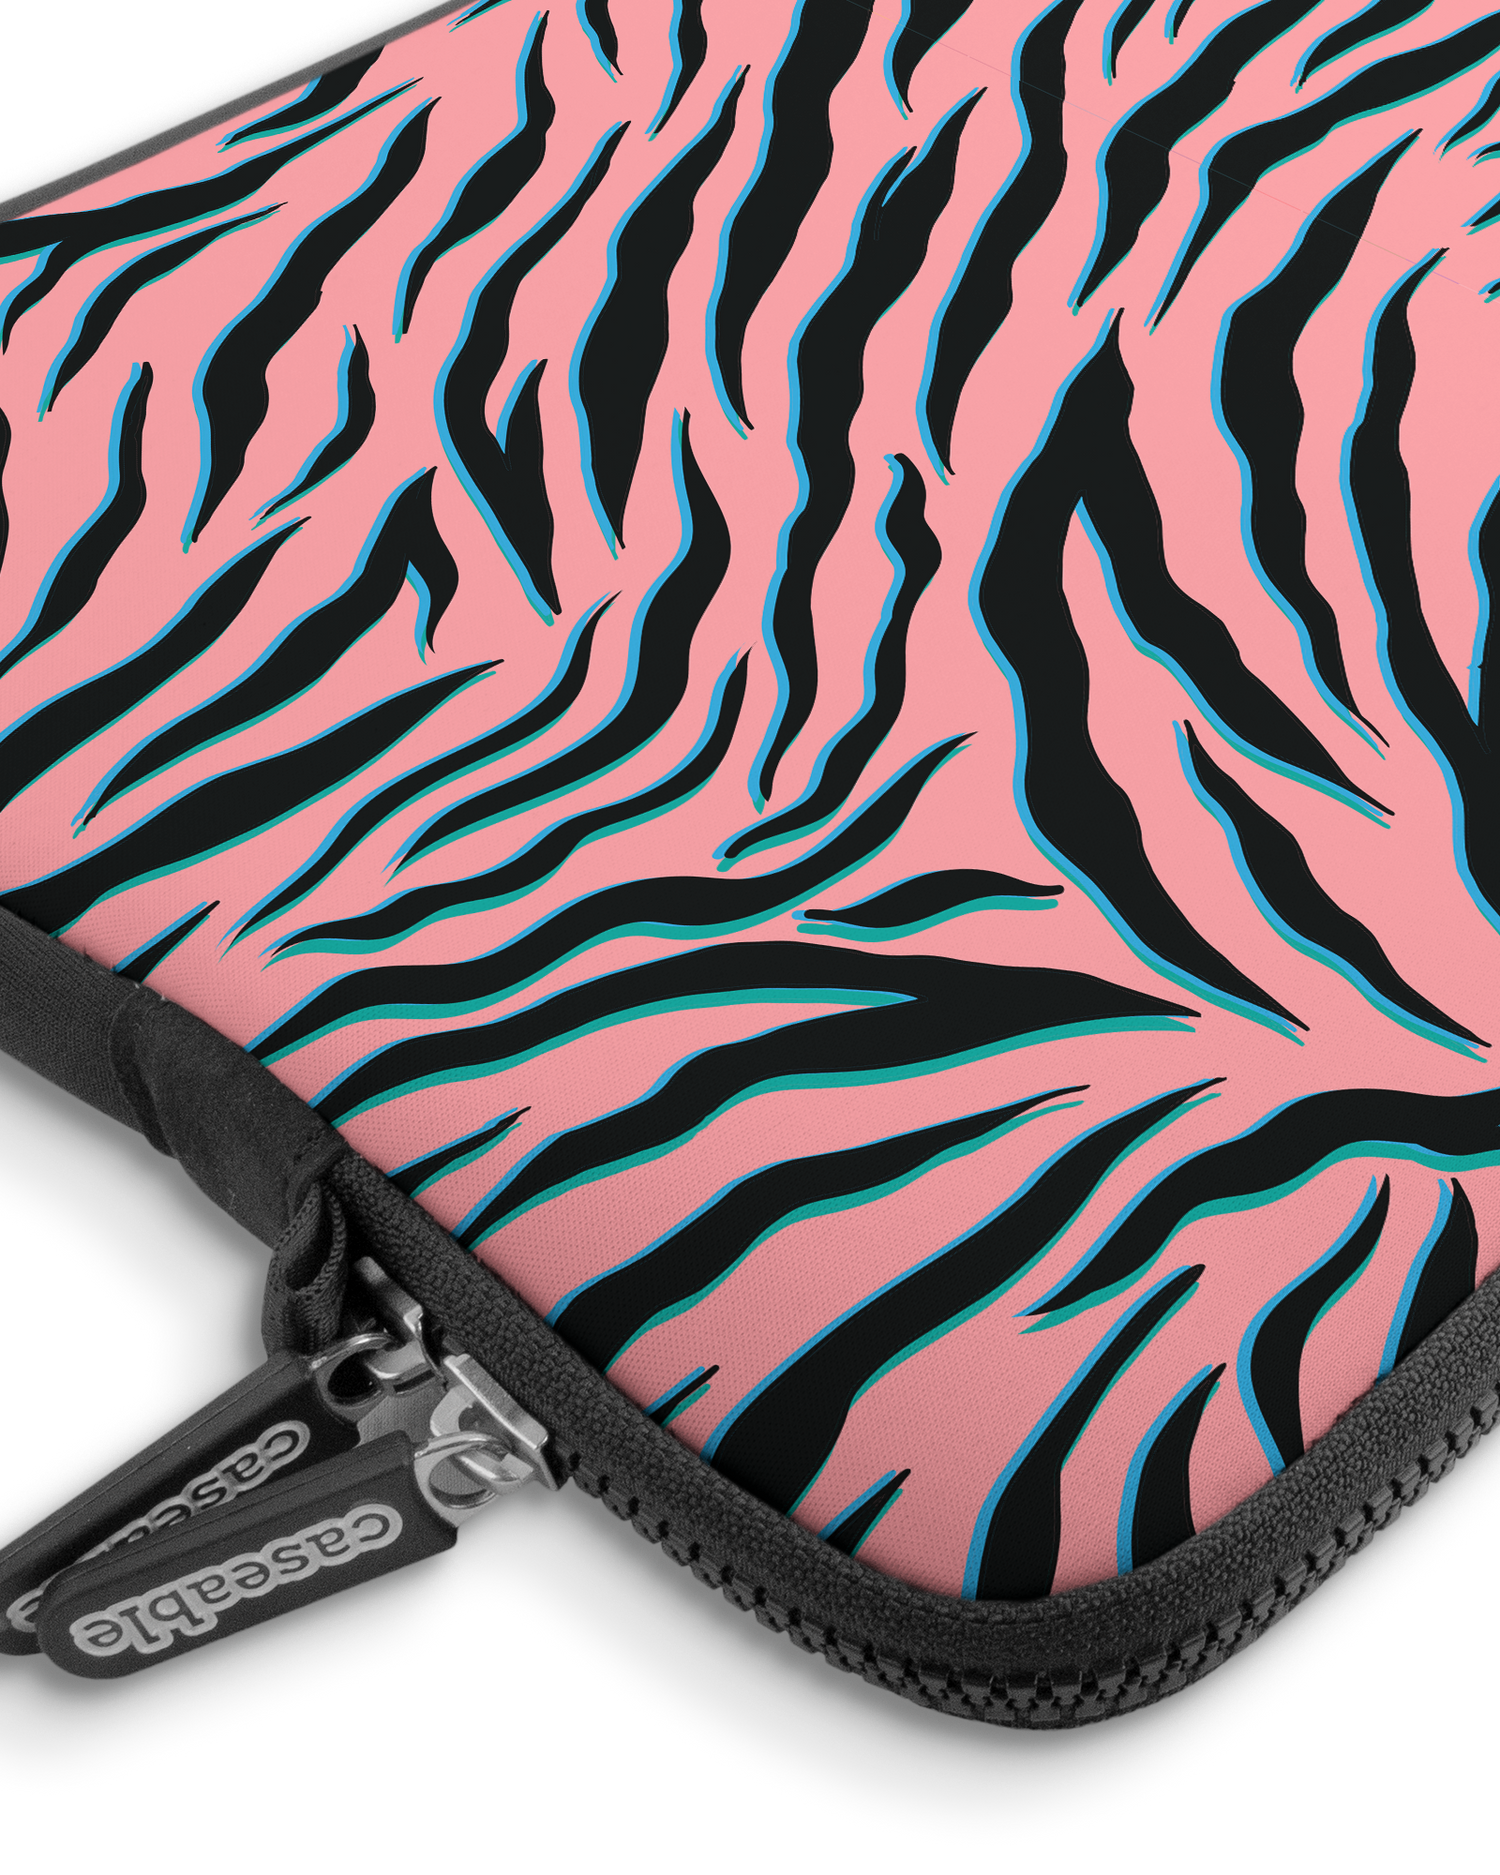 Pink Zebra Premium Laptoptasche 13-14 Zoll mit Gerät im Inneren